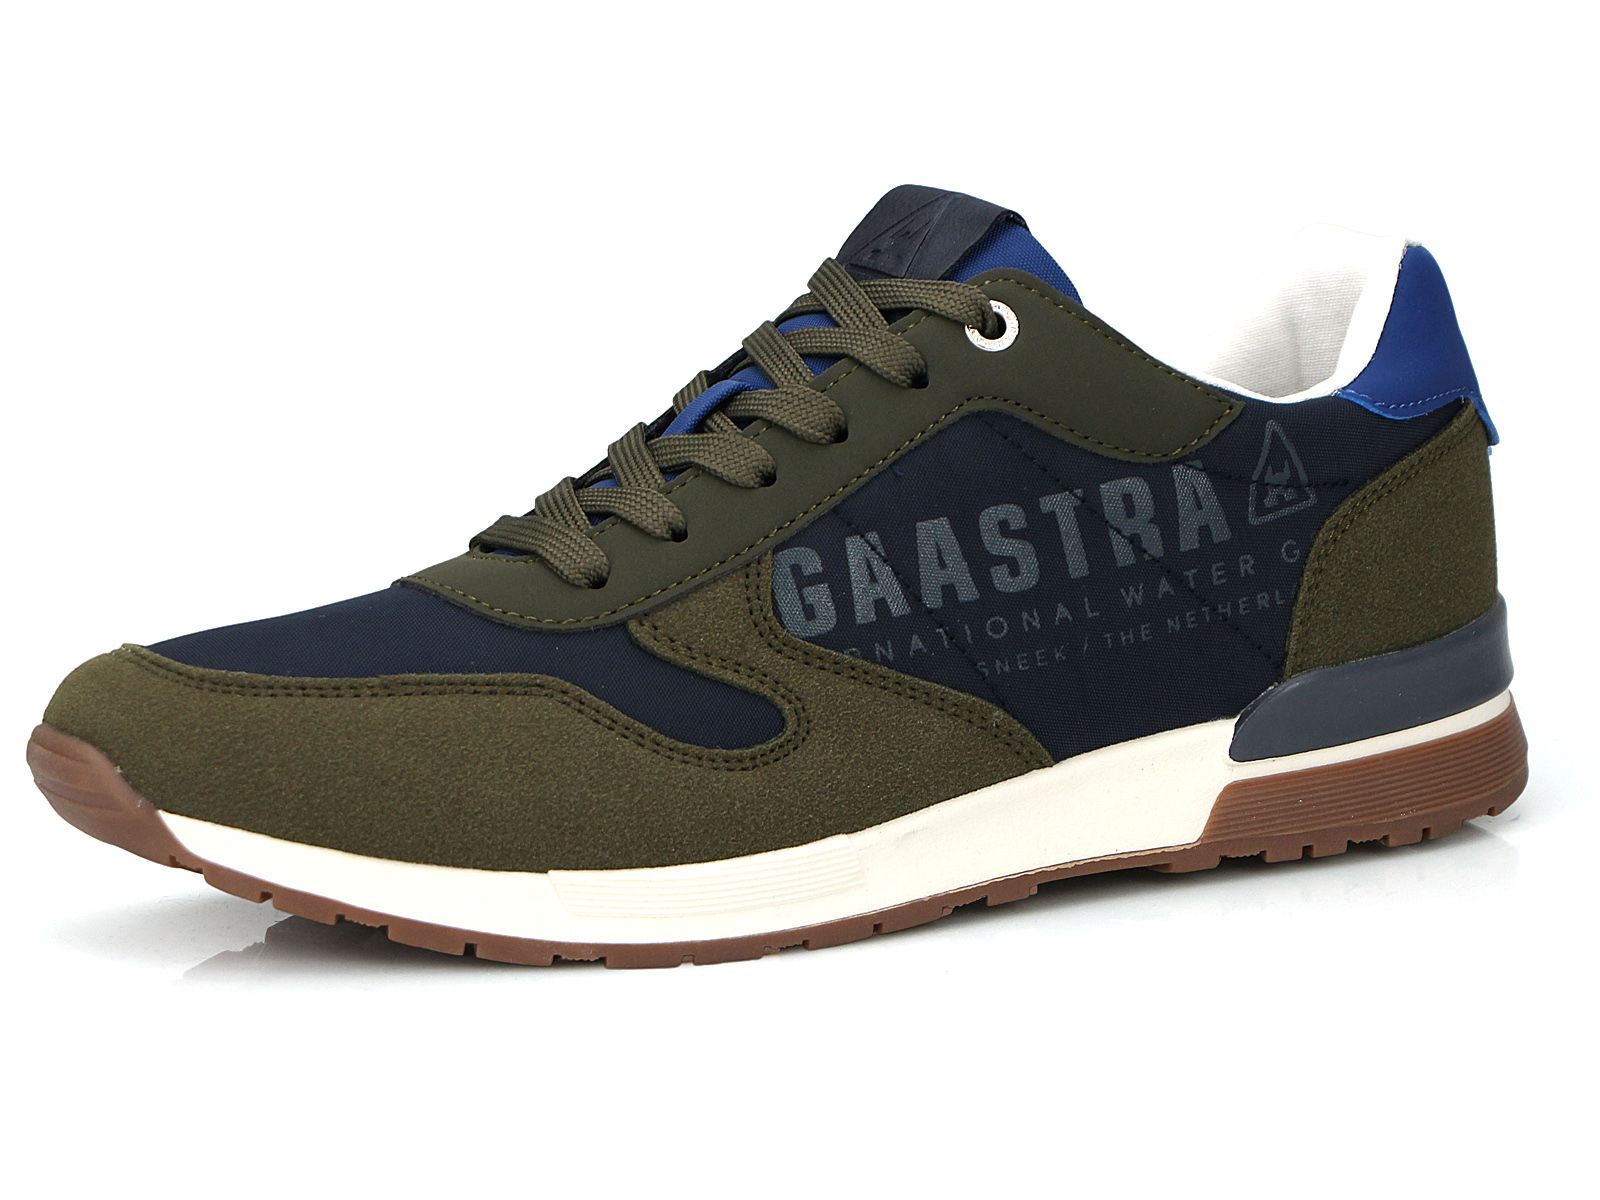 gaastra-rangeley-sneakers